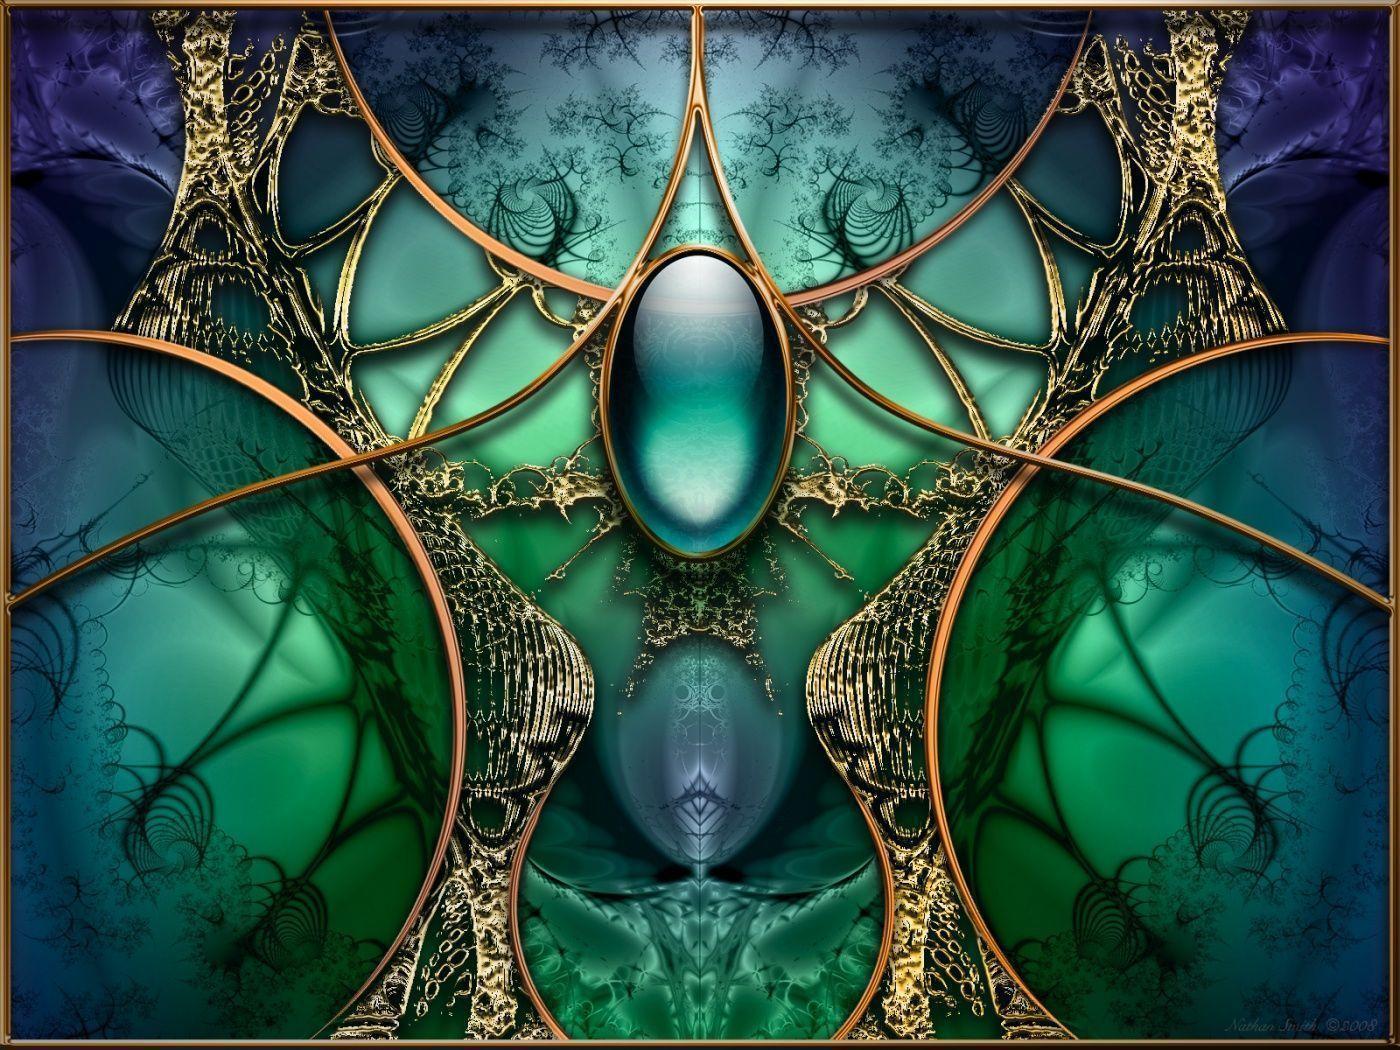 fractal 3D art dmt stimulation body mind soul wallpaper